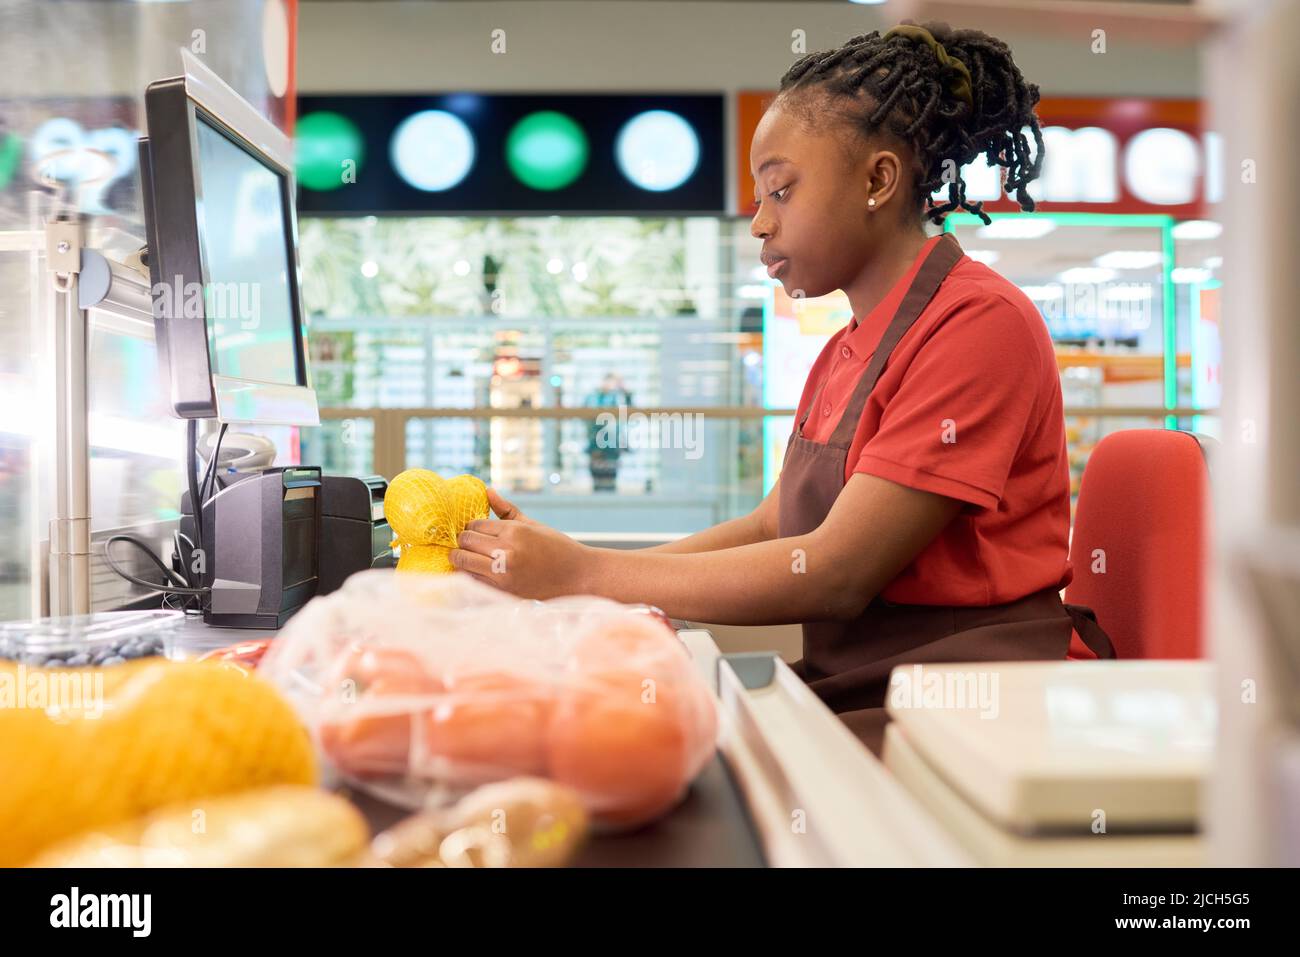 Junge Verkäuferin im Geschäft scannt in Uniform frische Zitronen in Beutel, während sie an der Theke sitzt und Kunden im Supermarkt bedient Stockfoto